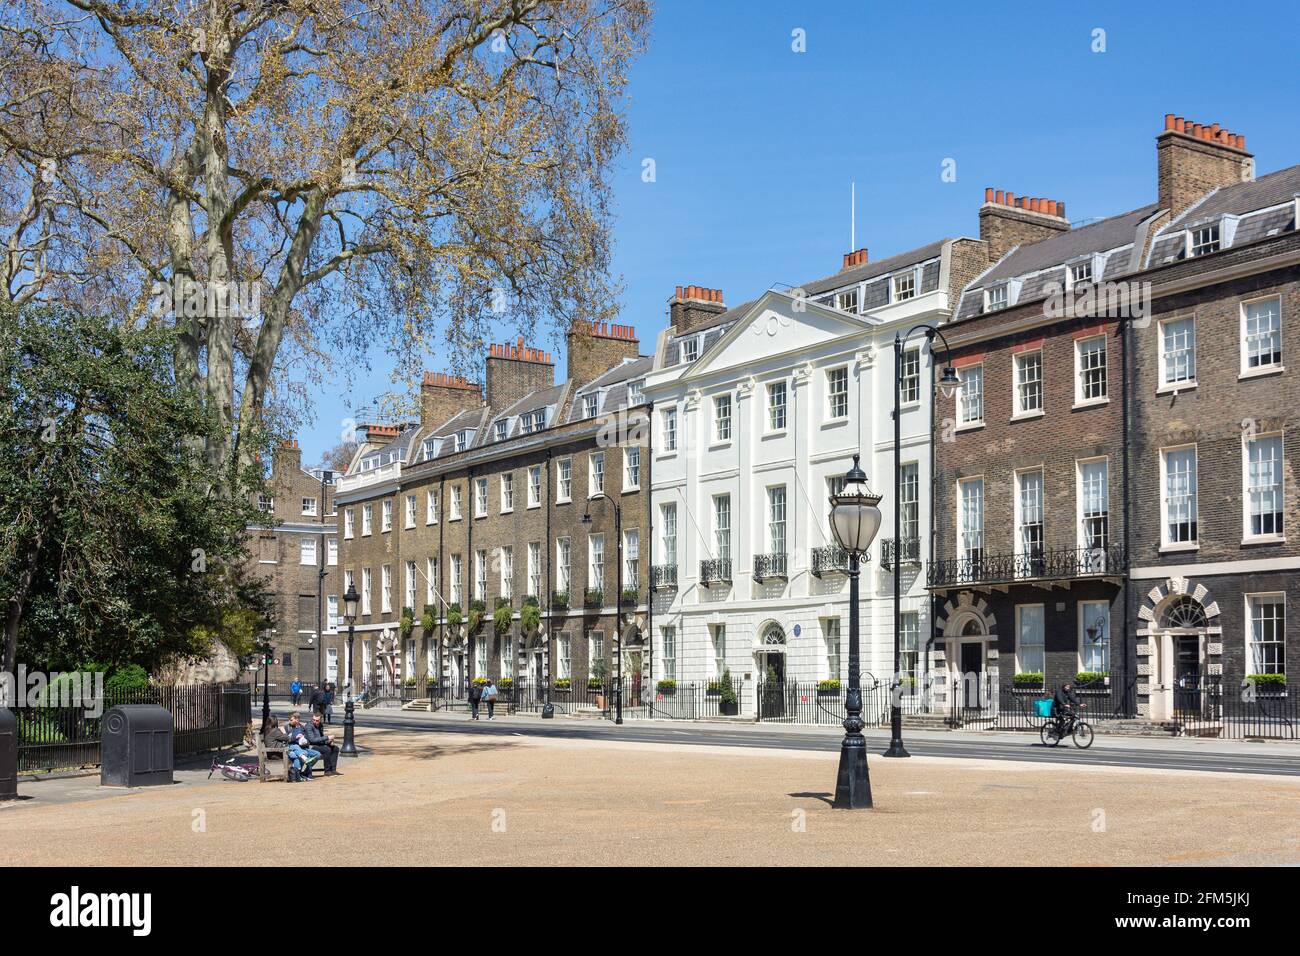 Maisons de ville et jardin géorgiens, Bedford Square, Bloomsbury, London Borough of Camden, Greater London, Angleterre, Royaume-Uni Banque D'Images